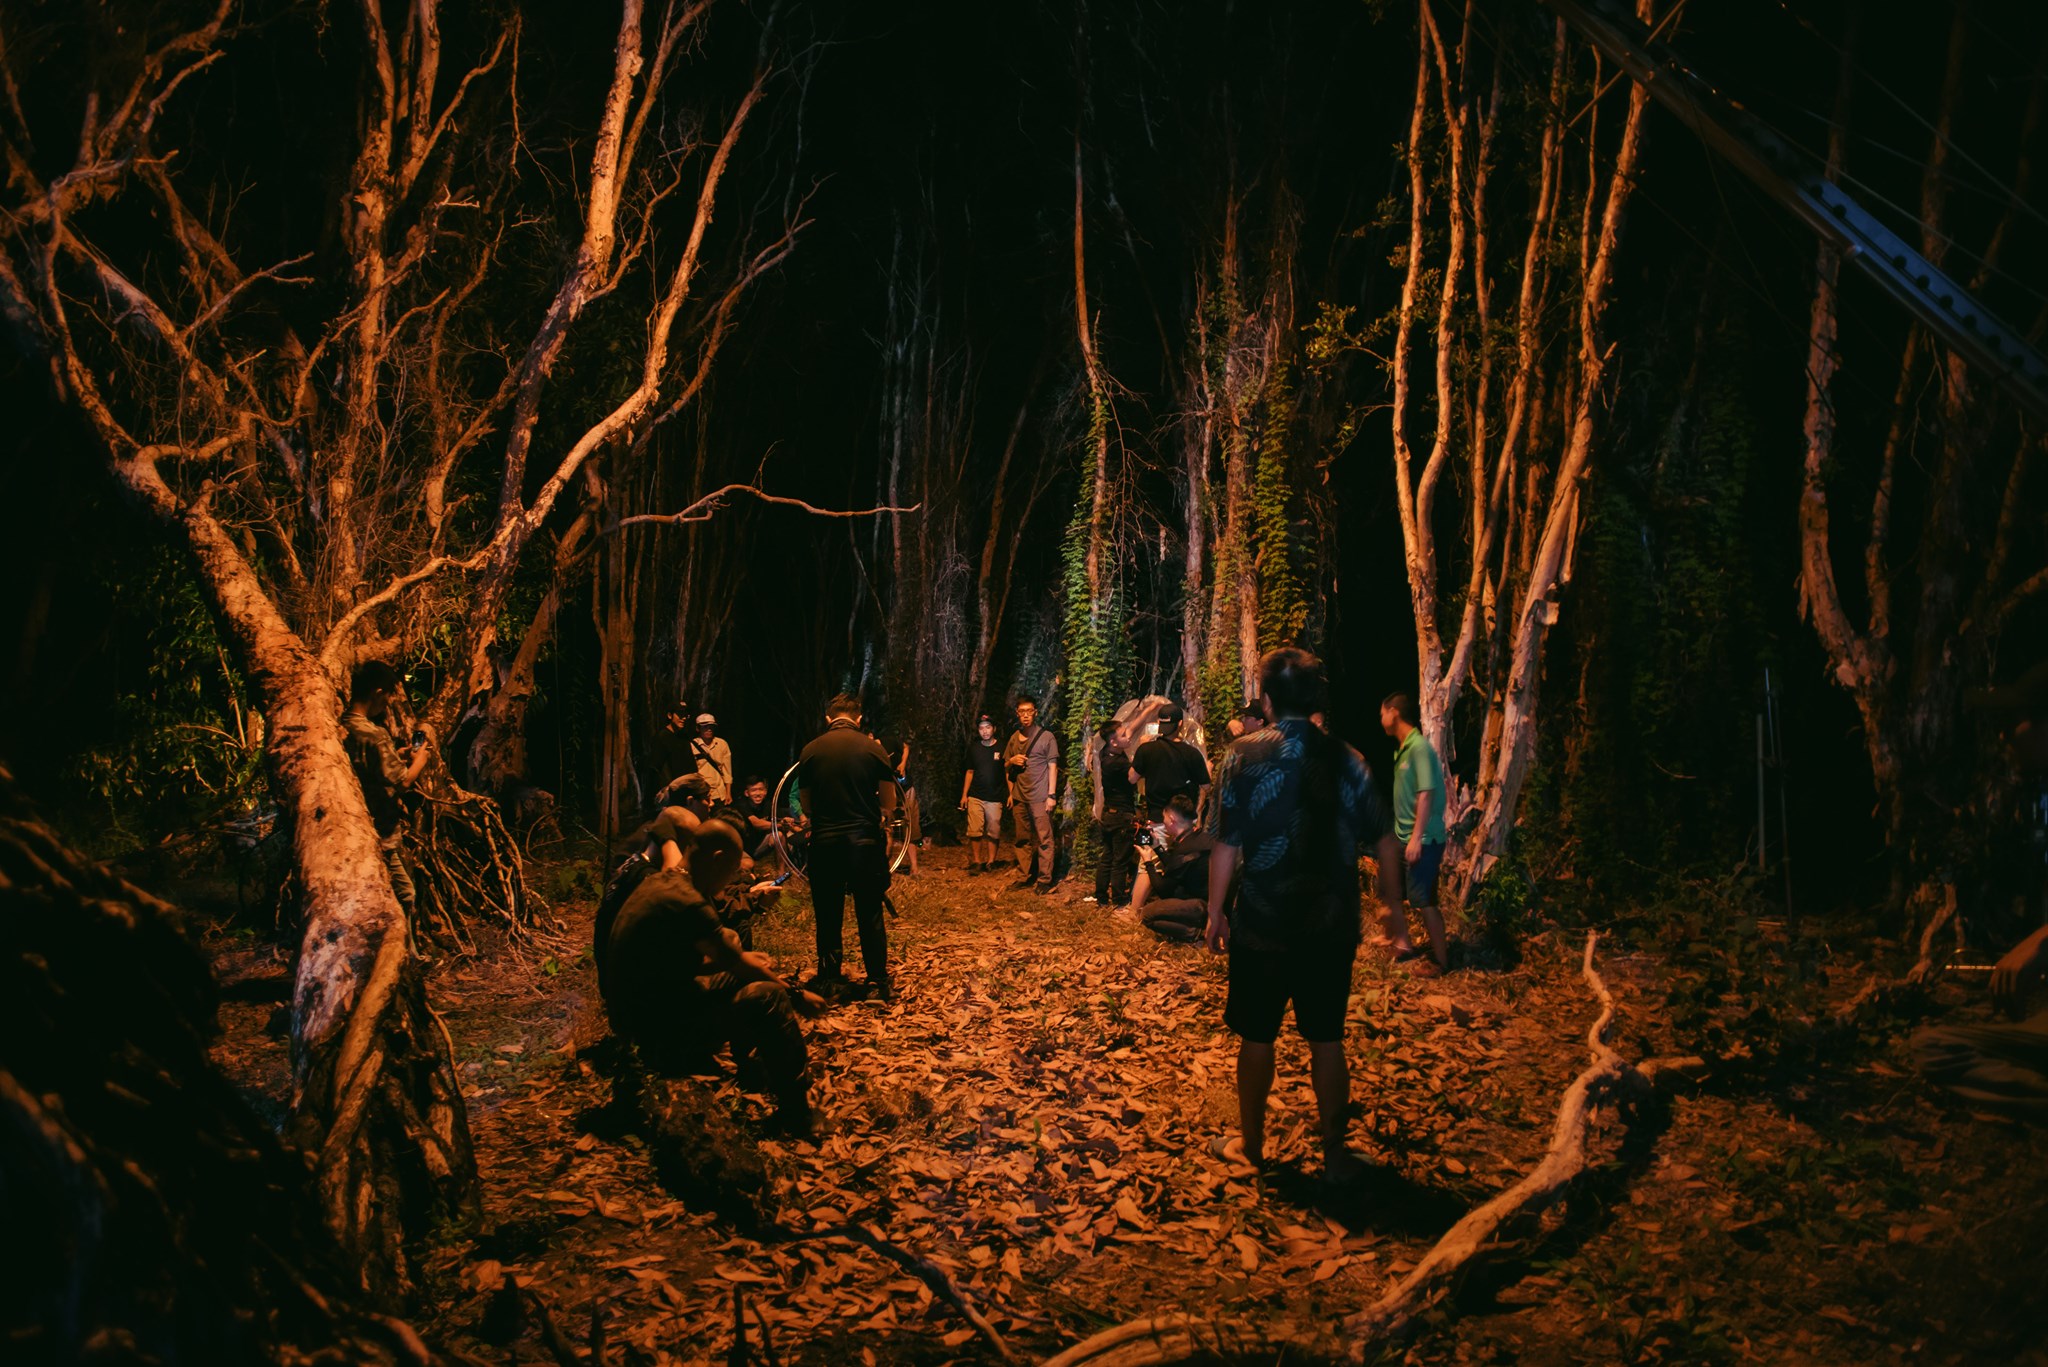 MV mới của Jack được quay trên nền rừng bị cháy của một ê-kíp bất cẩn trước đó để lại